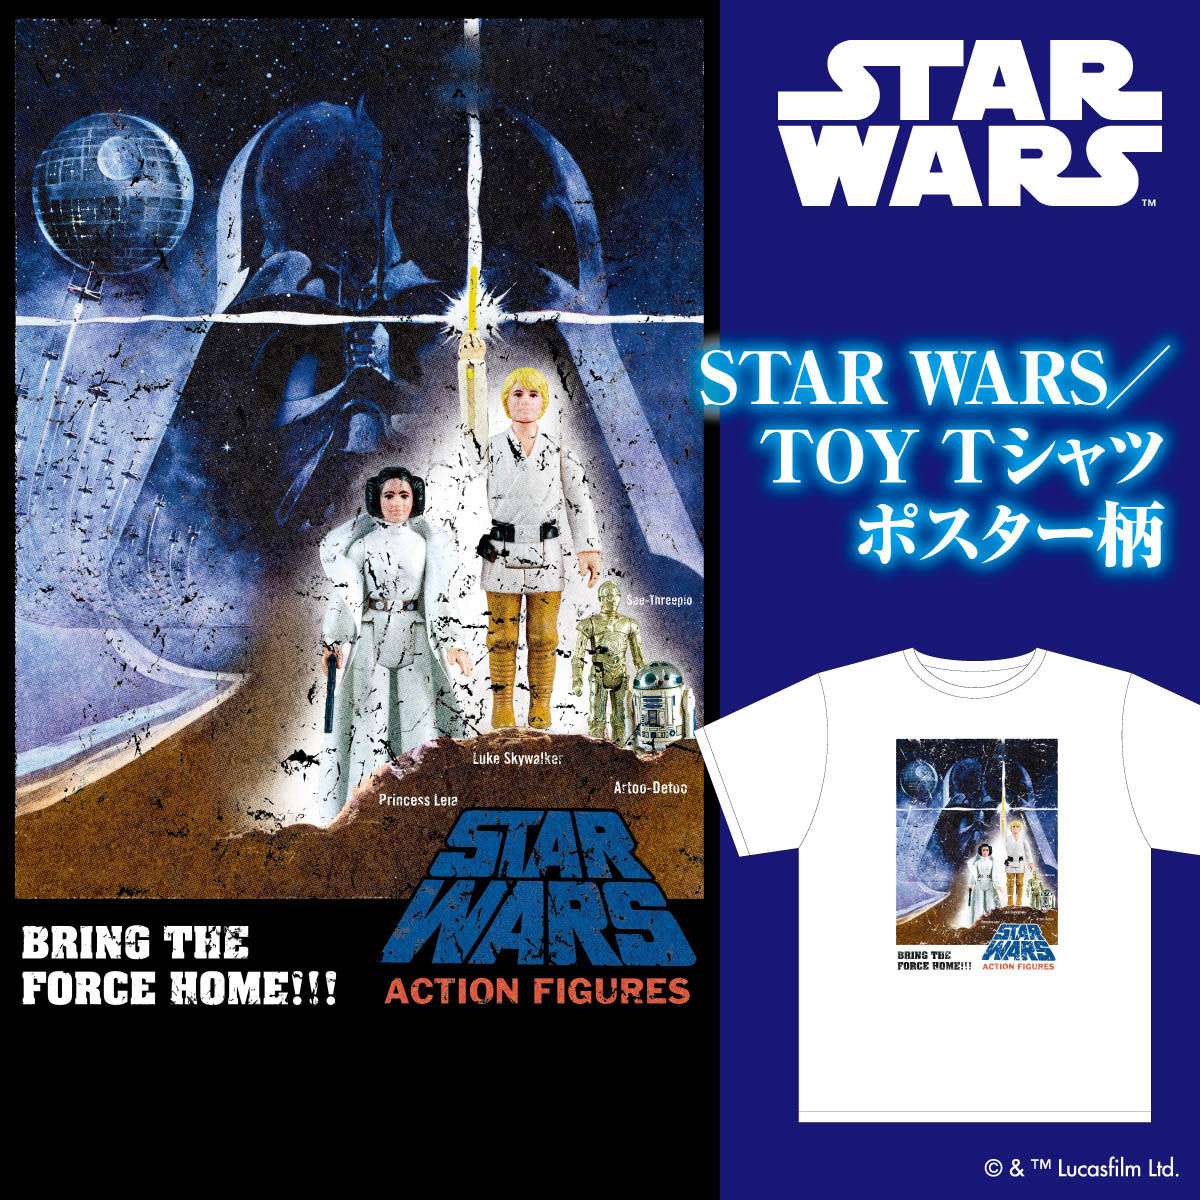 Star Wars スター ウォーズ Toy Tシャツ ポスター柄 Star Wars スター ウォーズ 趣味 コレクション バンダイナムコグループ公式通販サイト